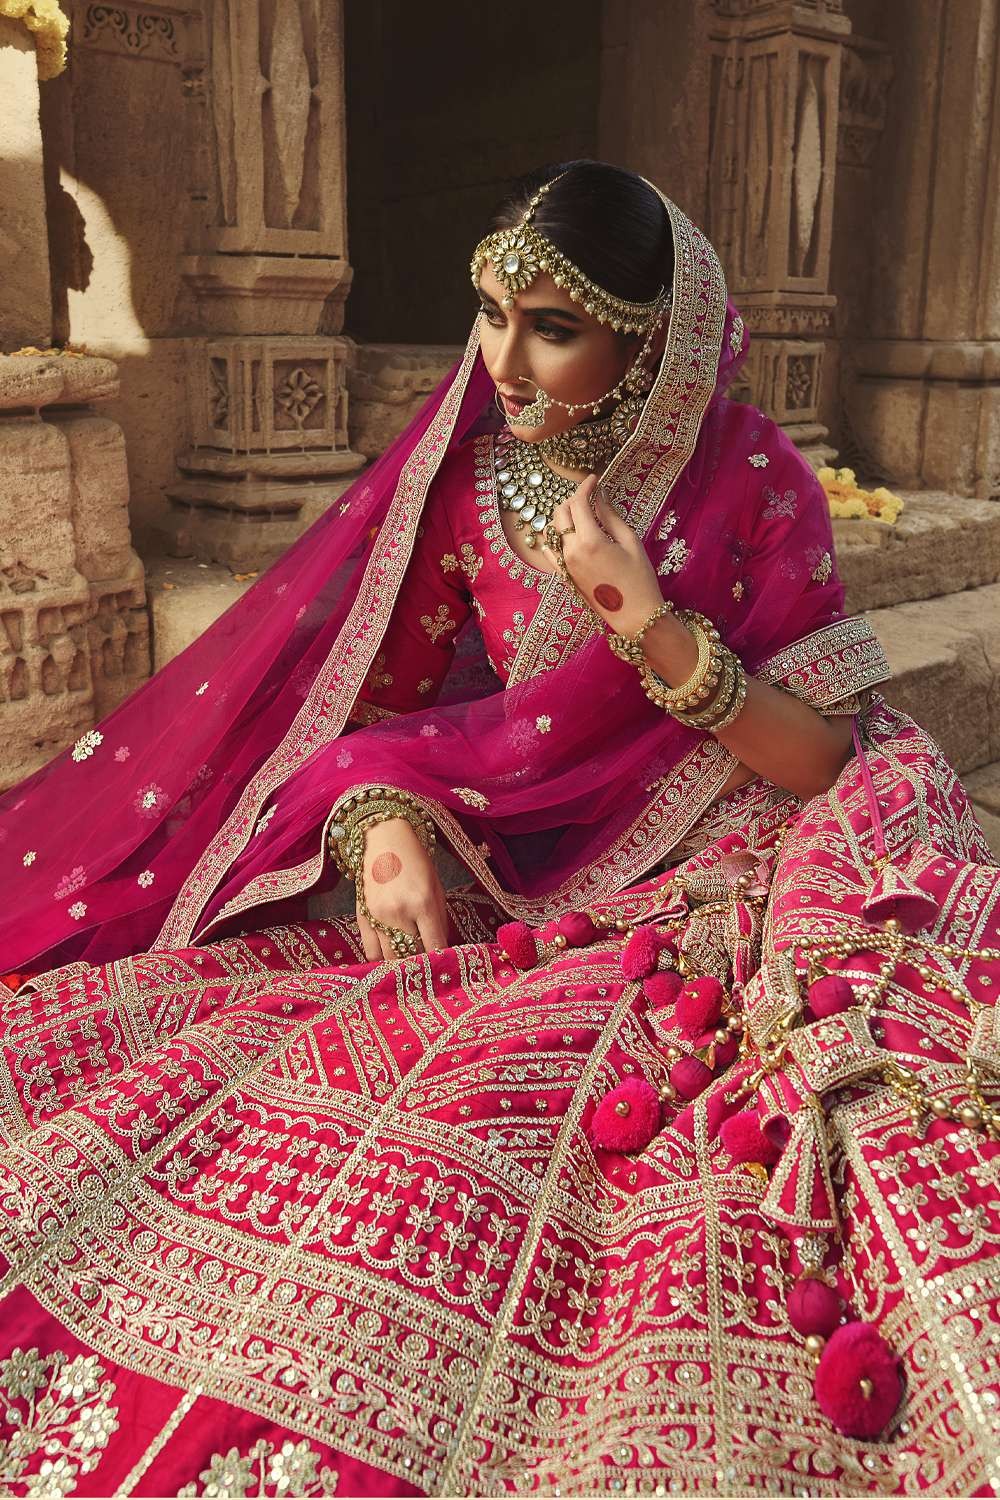 वेडिंग डे: Pink Lehenga पहन रही हैं तो Bridal Jewellery को लेकर ना हो  कन्फ्यूज, यहां से लें Ideas - jewellery combination ideas to pair with your pink  bridal lehenga-mobile